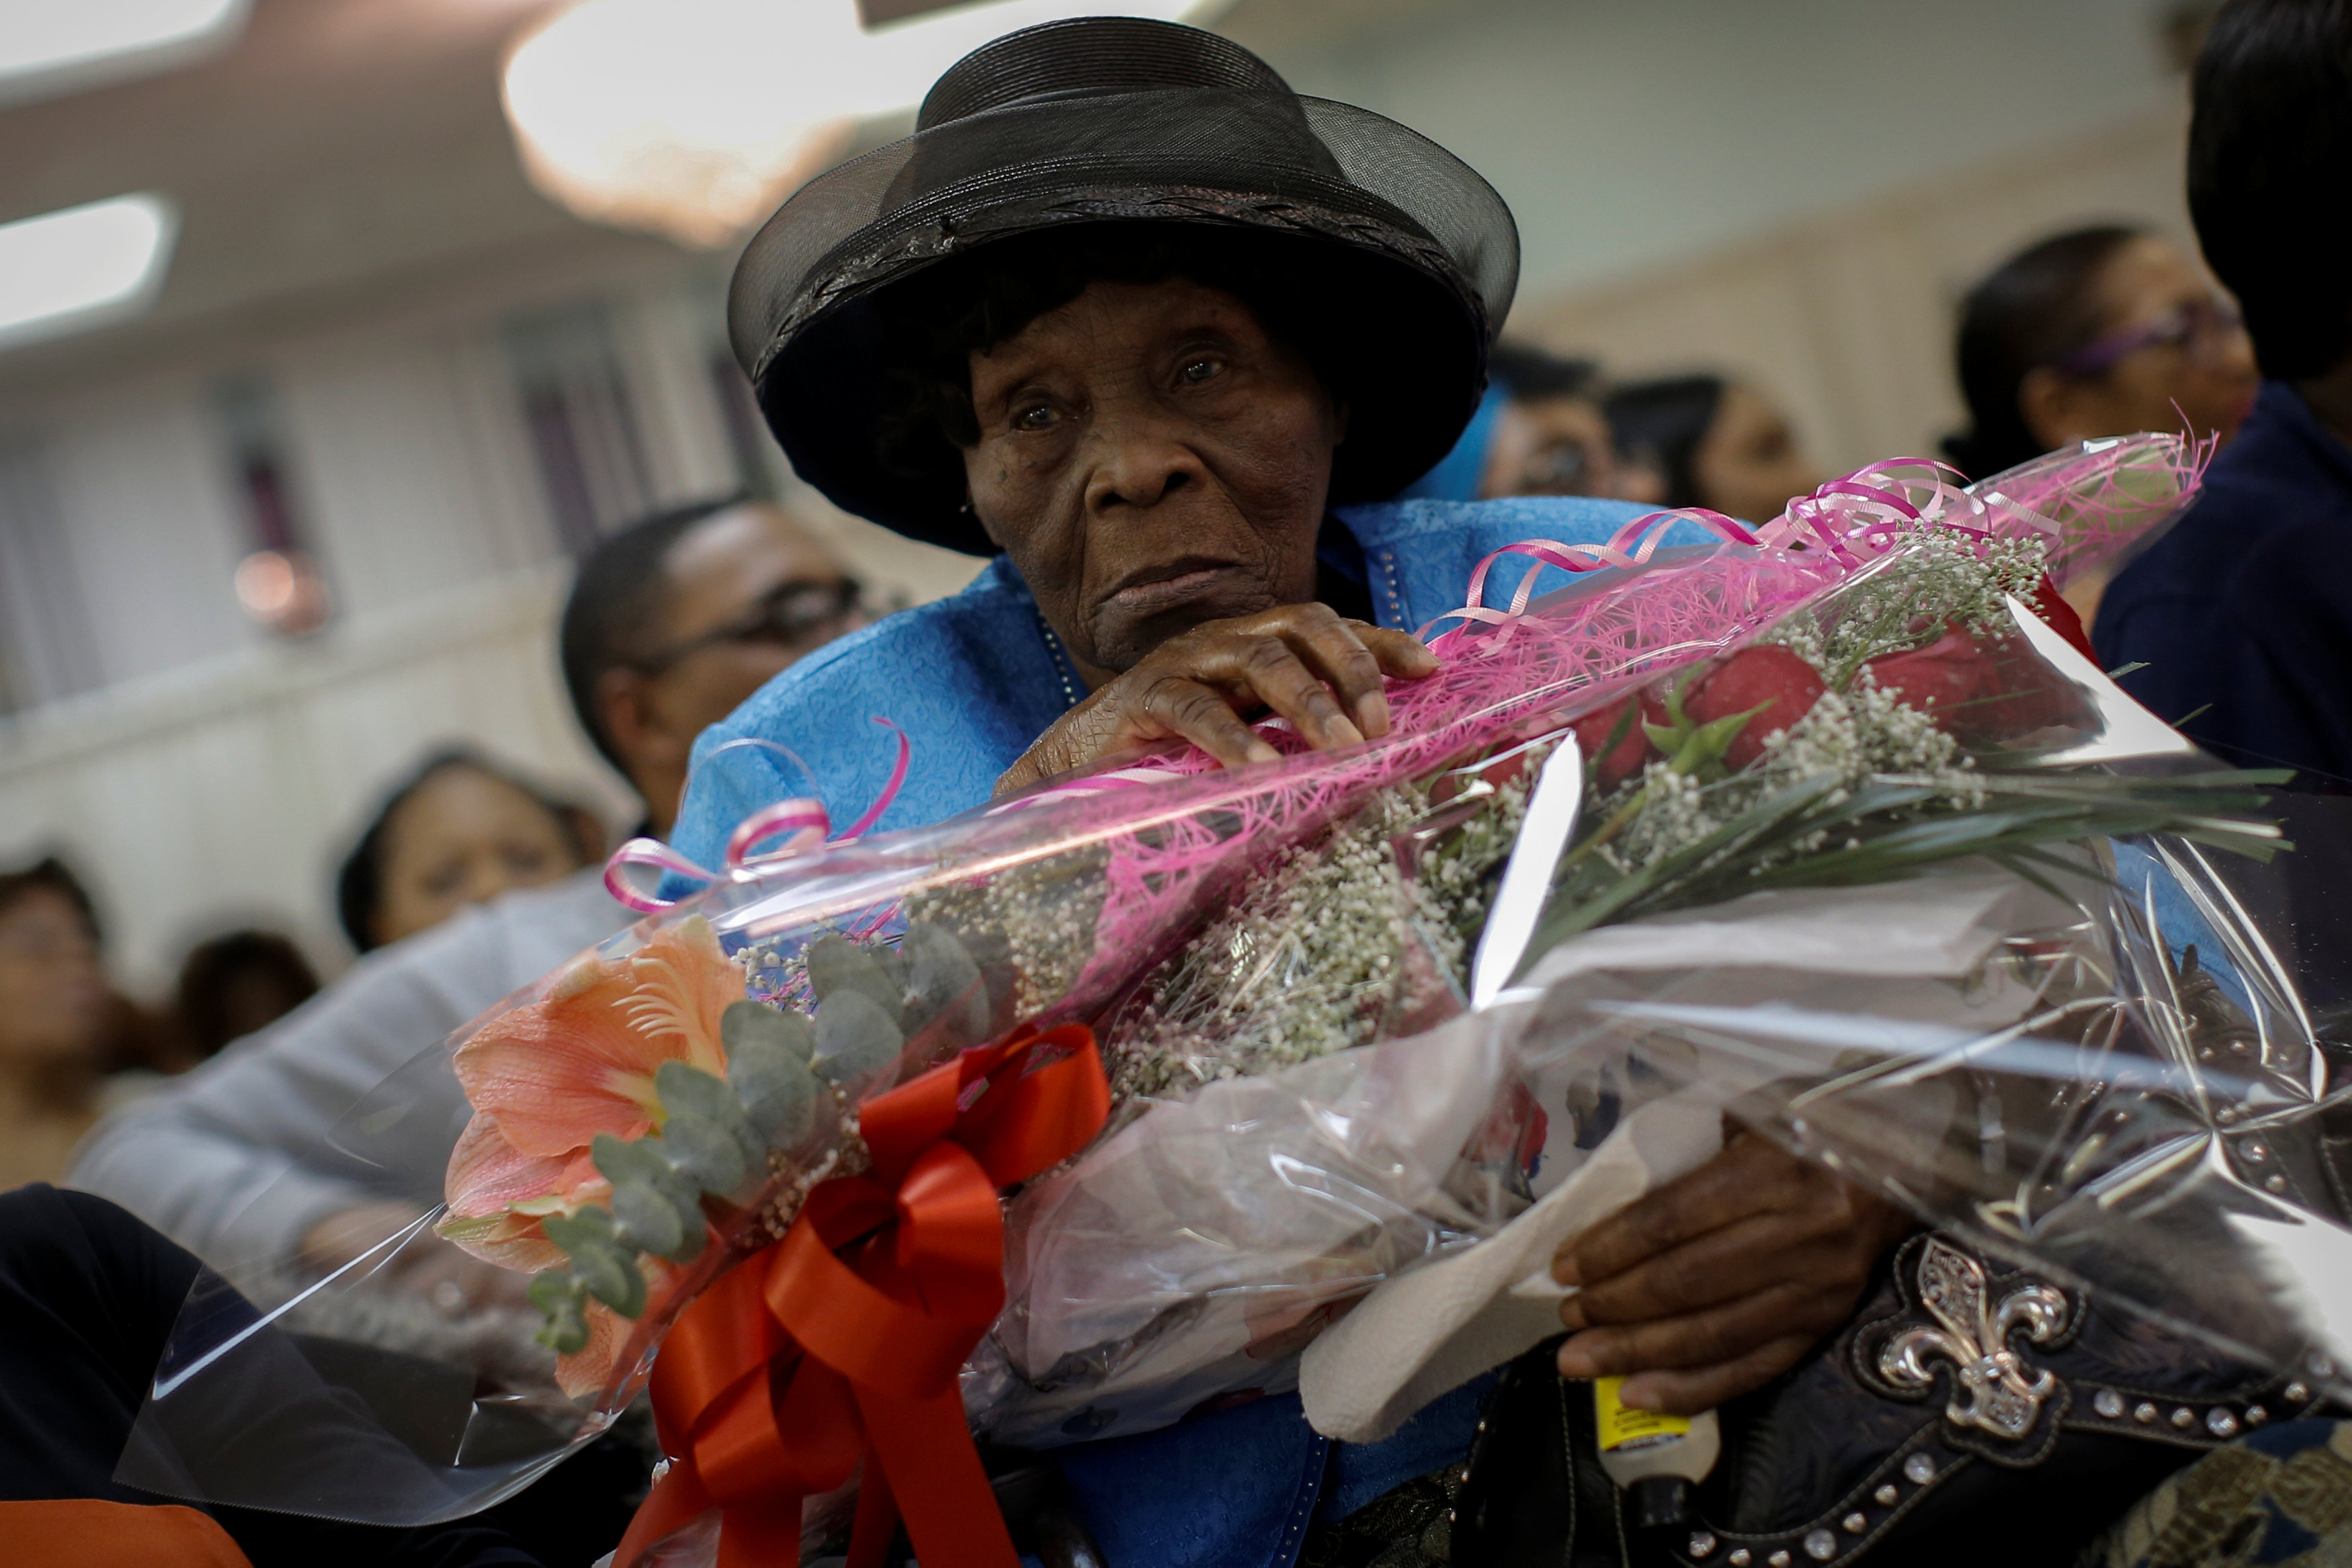 Three women at same nursing home celebrate 100 years of life